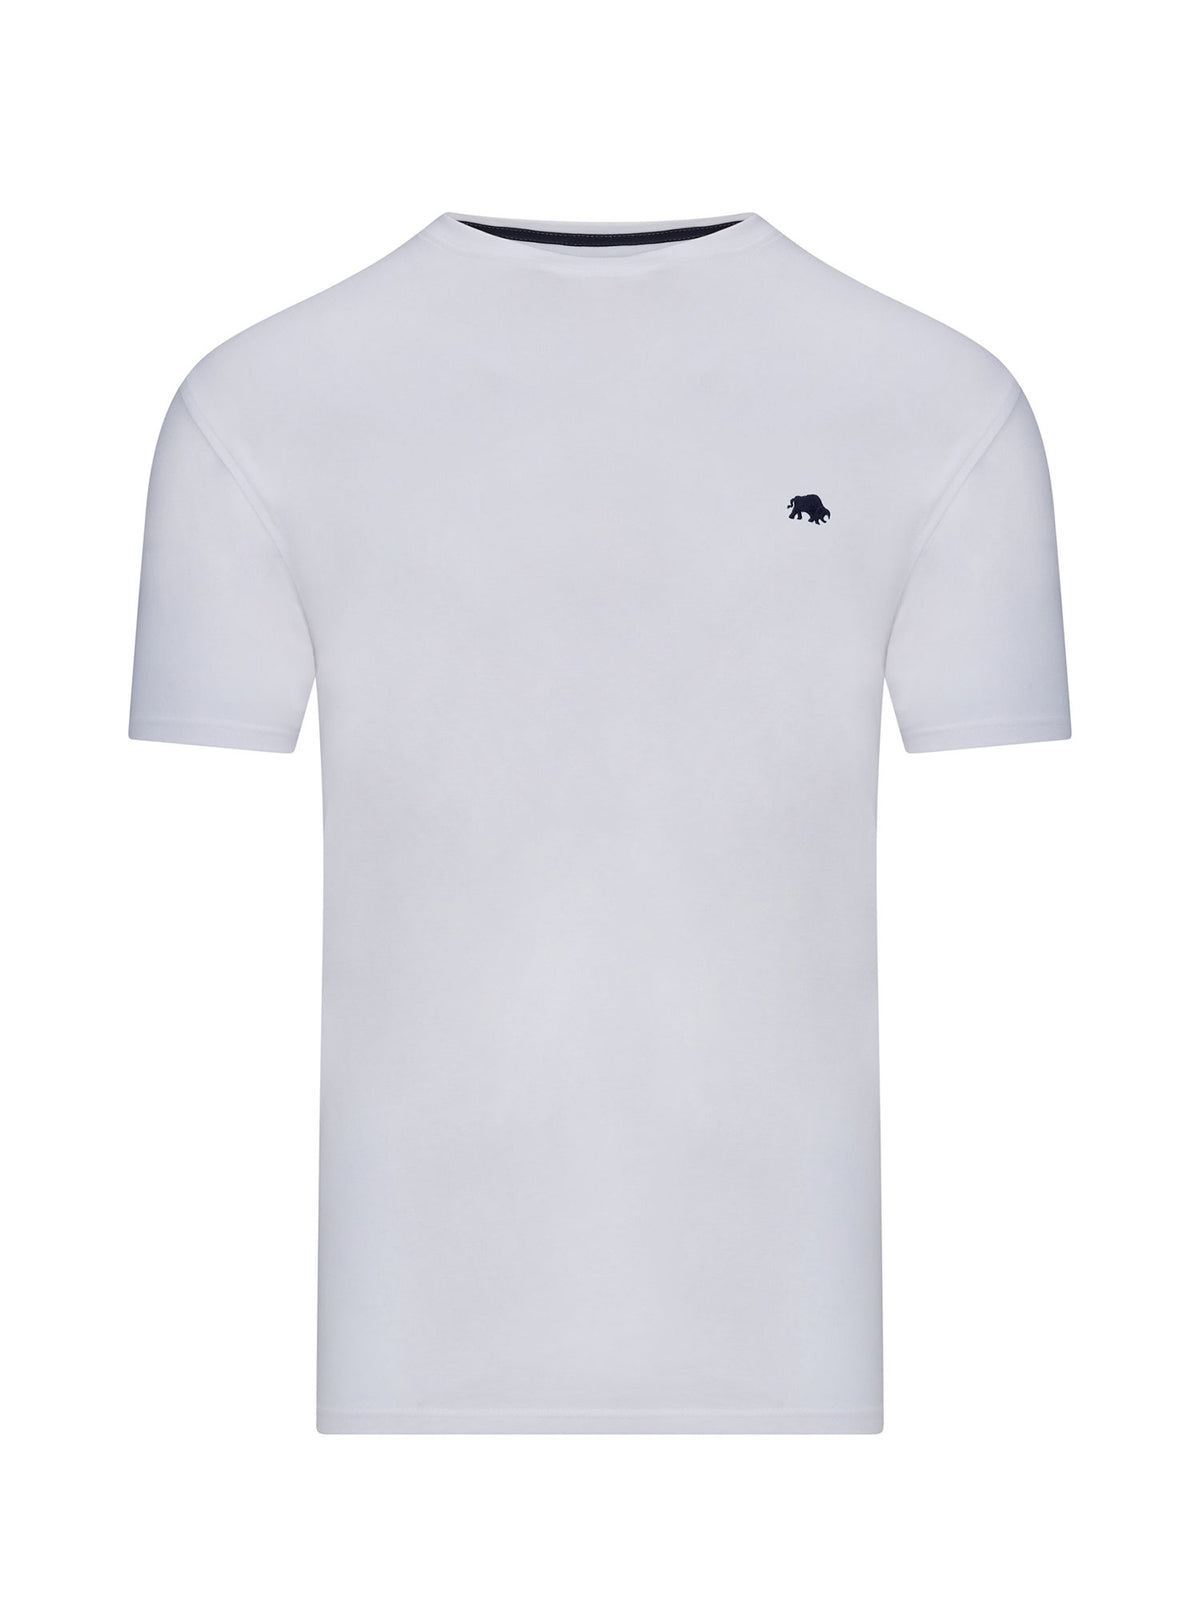 Classic Organic T-Shirt - White